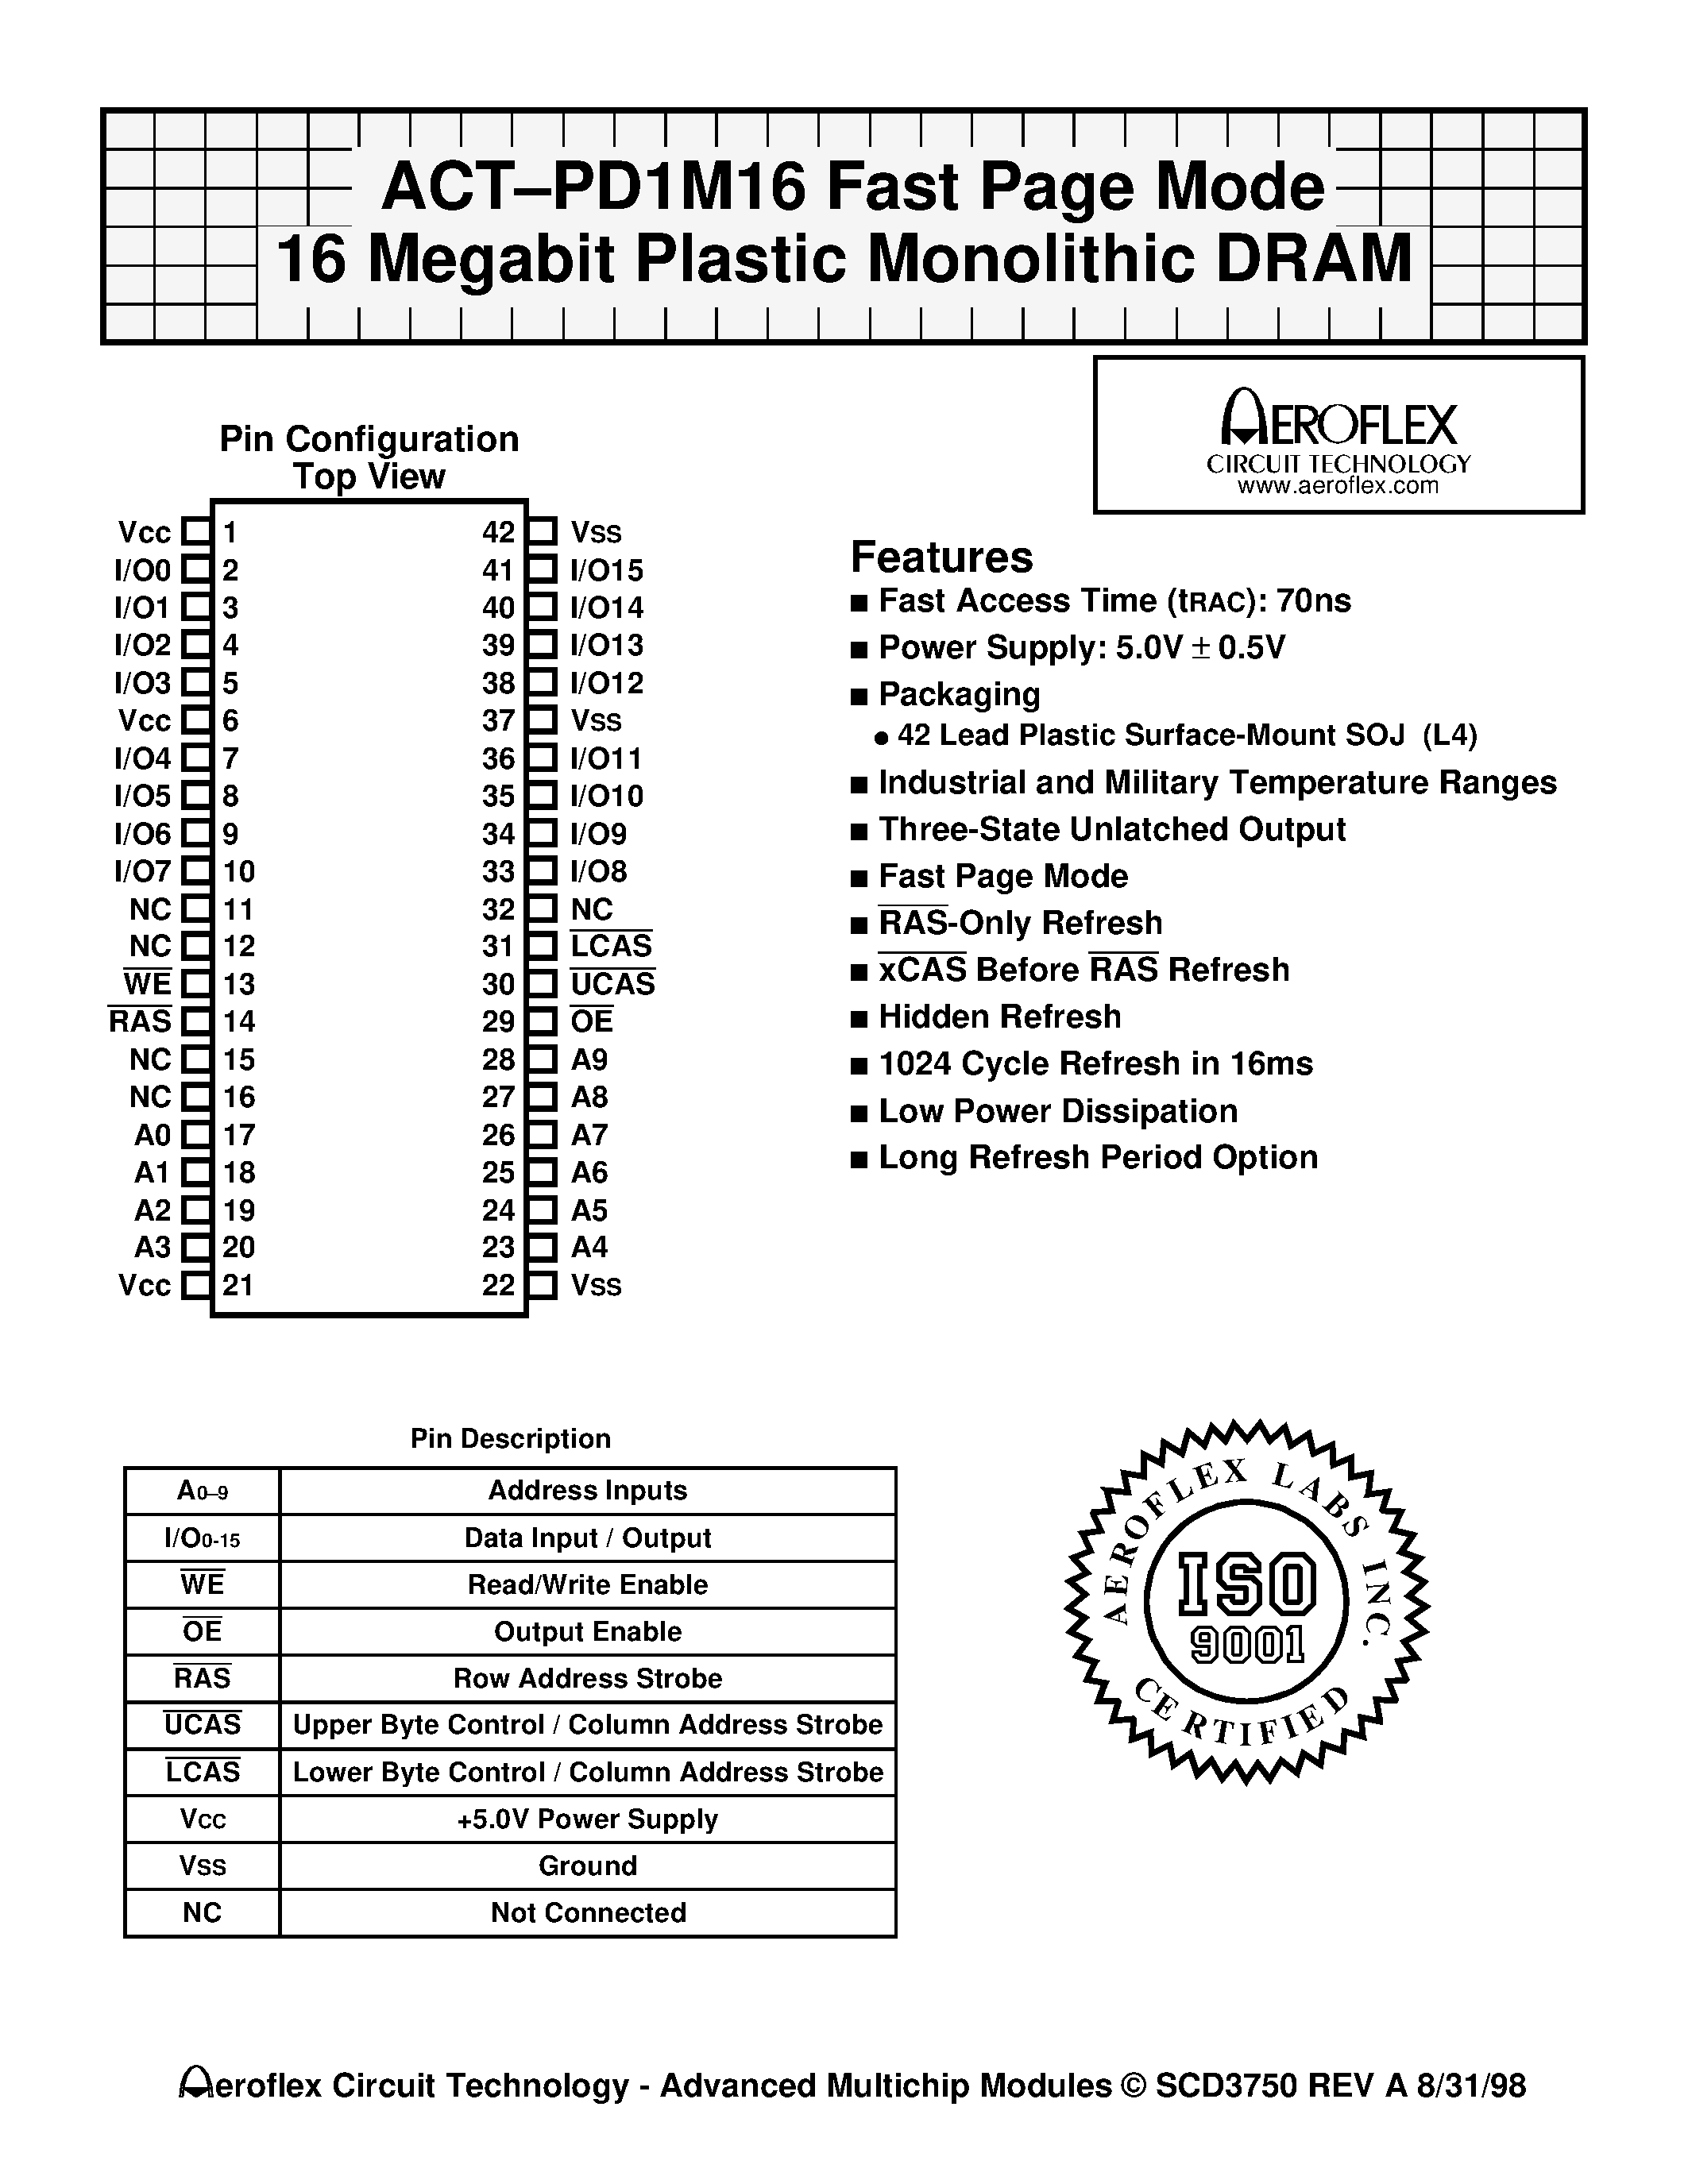 Даташит ACTPD1M16 - ACT-PD1M16 Fast Page Mode 16 Megabit Plastic Monolithic DRAM страница 1